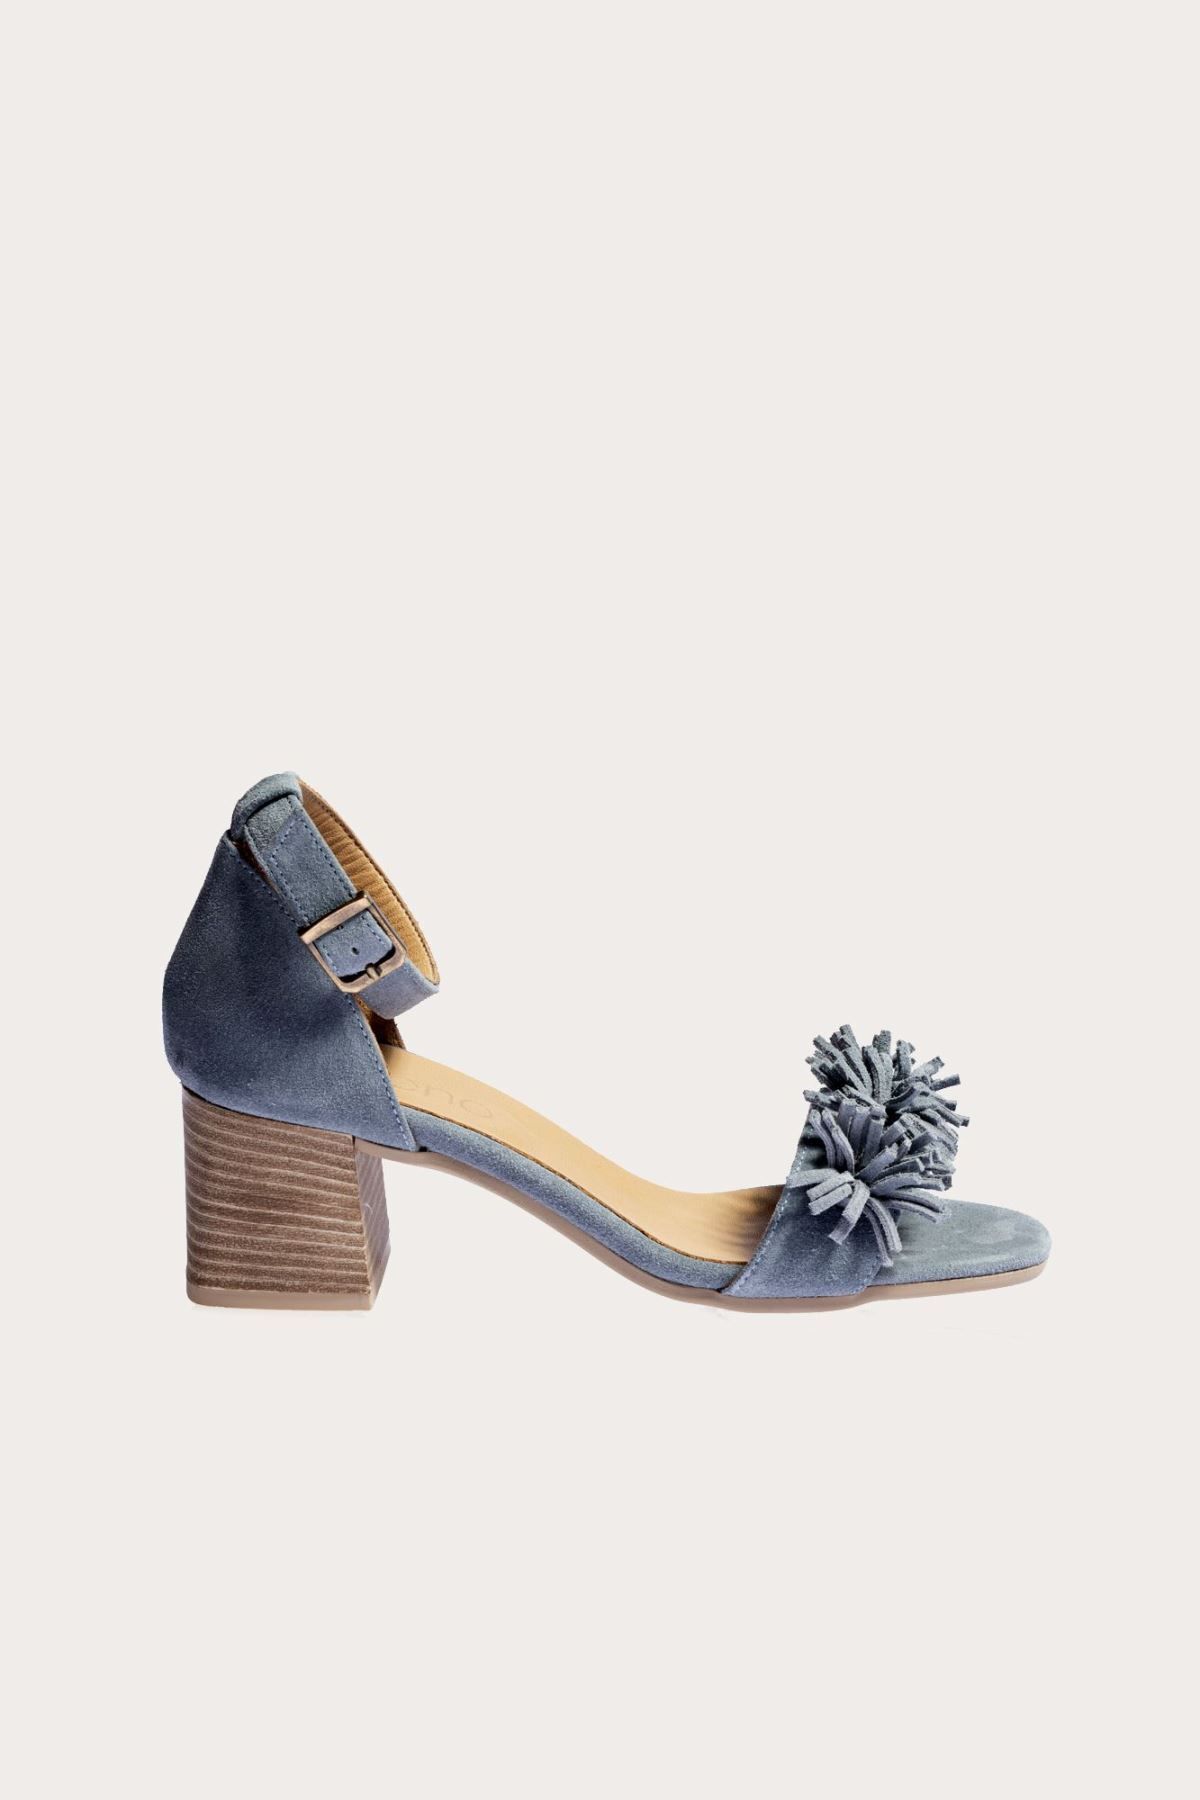 BUENO Shoes Mavi Süet Kadın Topuklu Ayakkabı